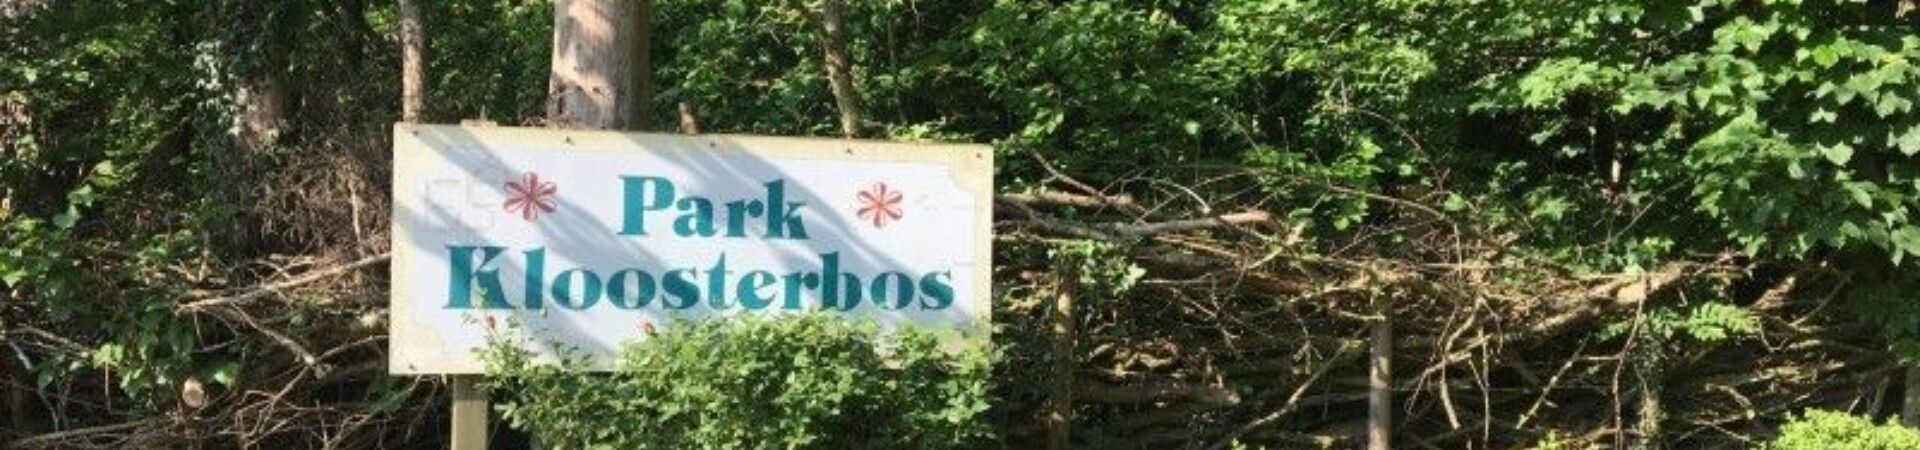 Bomen en een bordje waar op staat 'park Kloosterbos'